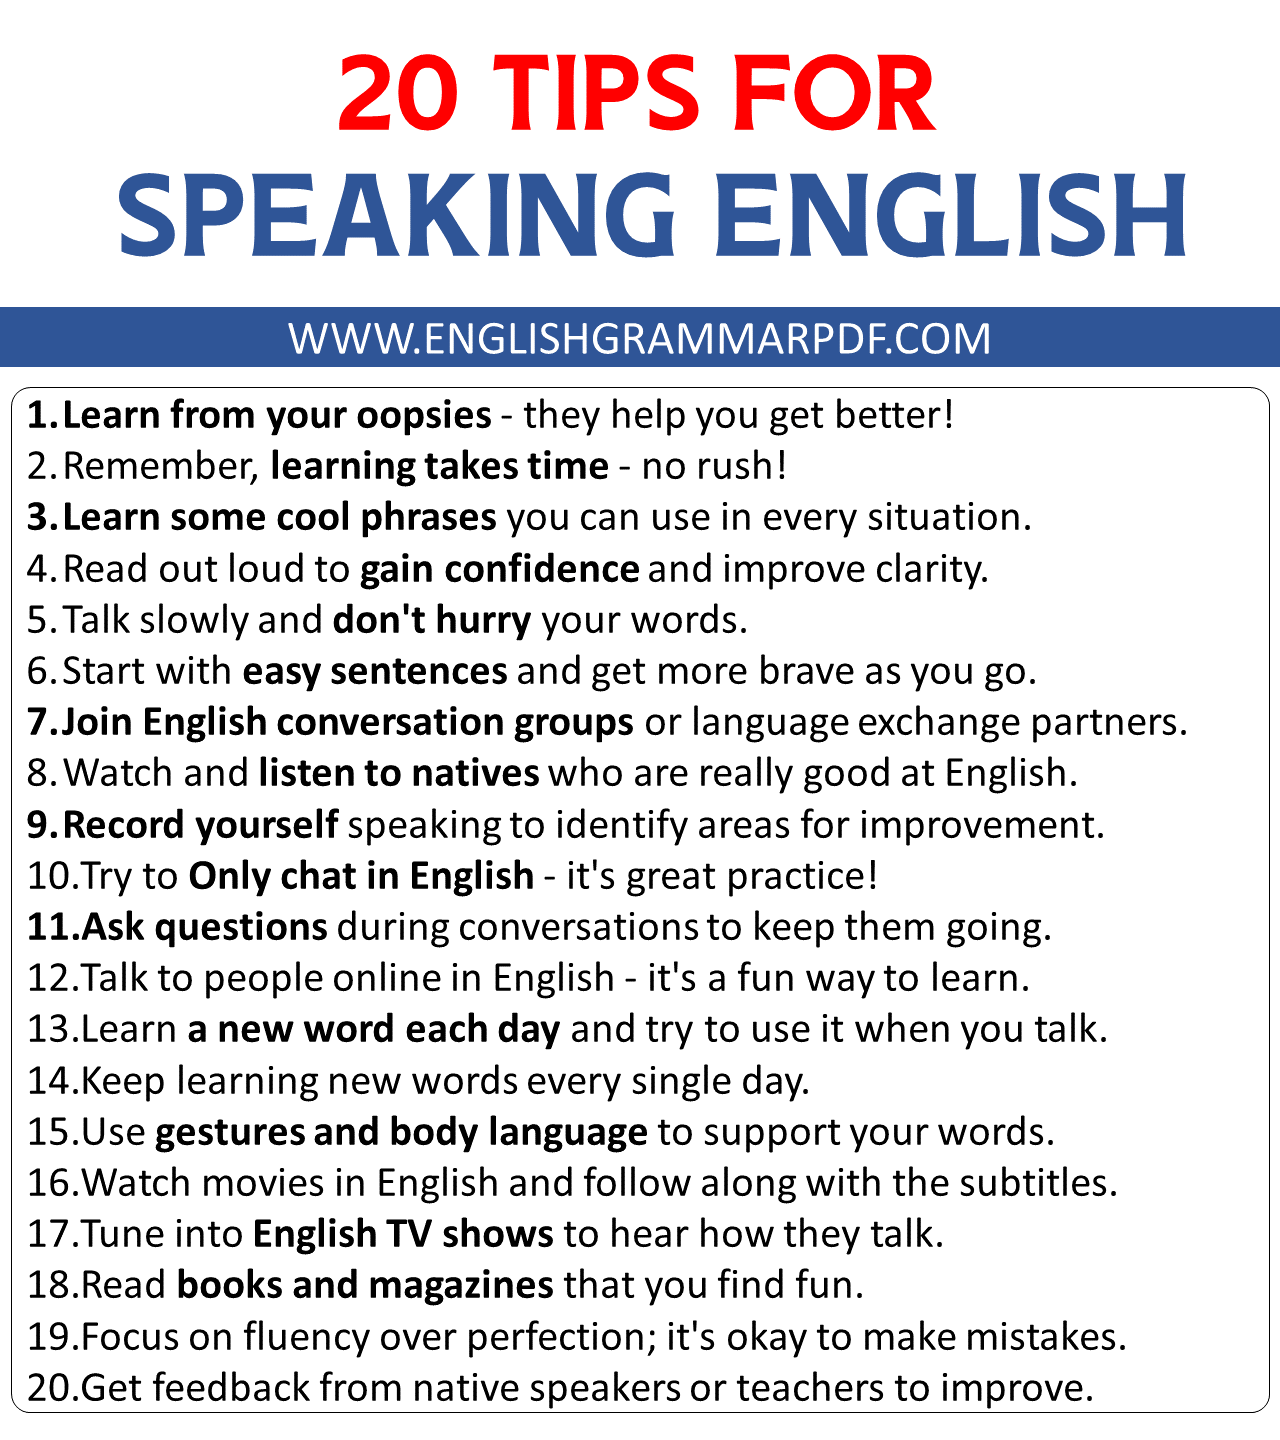 TIPS FOR SPOKEN ENGLISH